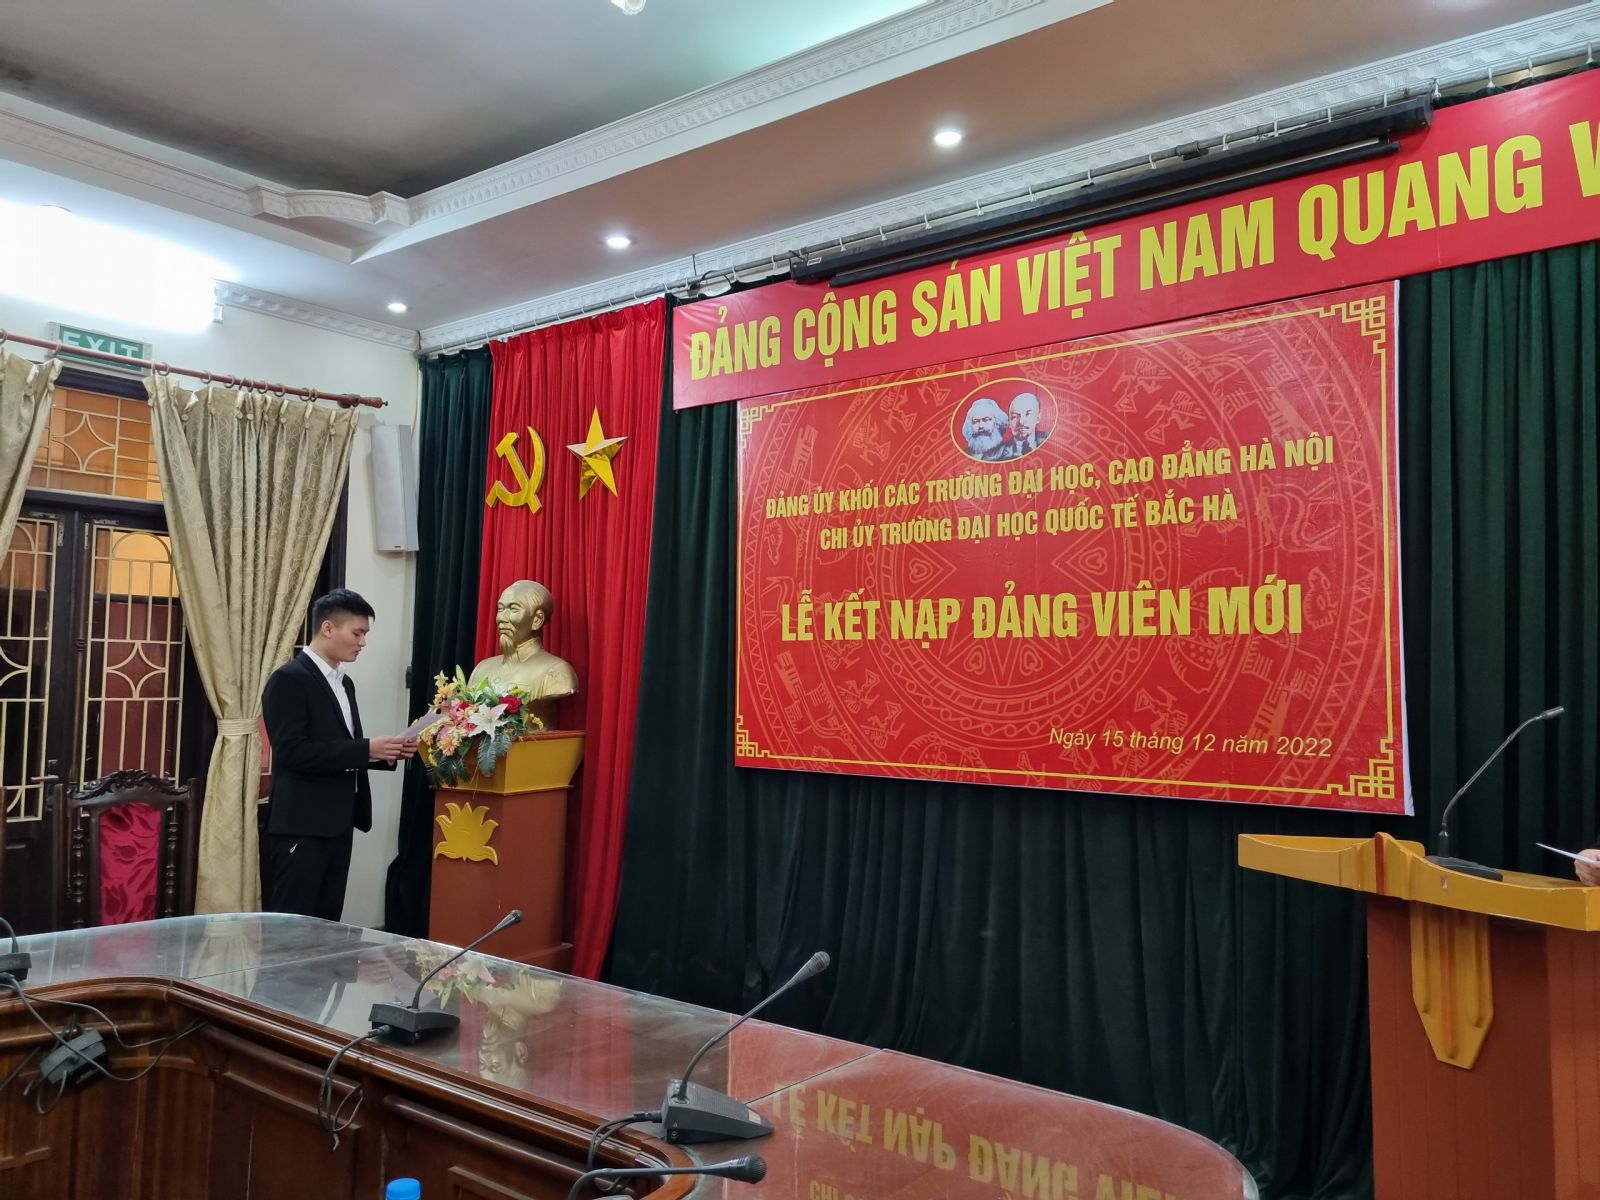 Hình ảnh đồng chí Đặng Đình Việt đọc lời tuyên thệ